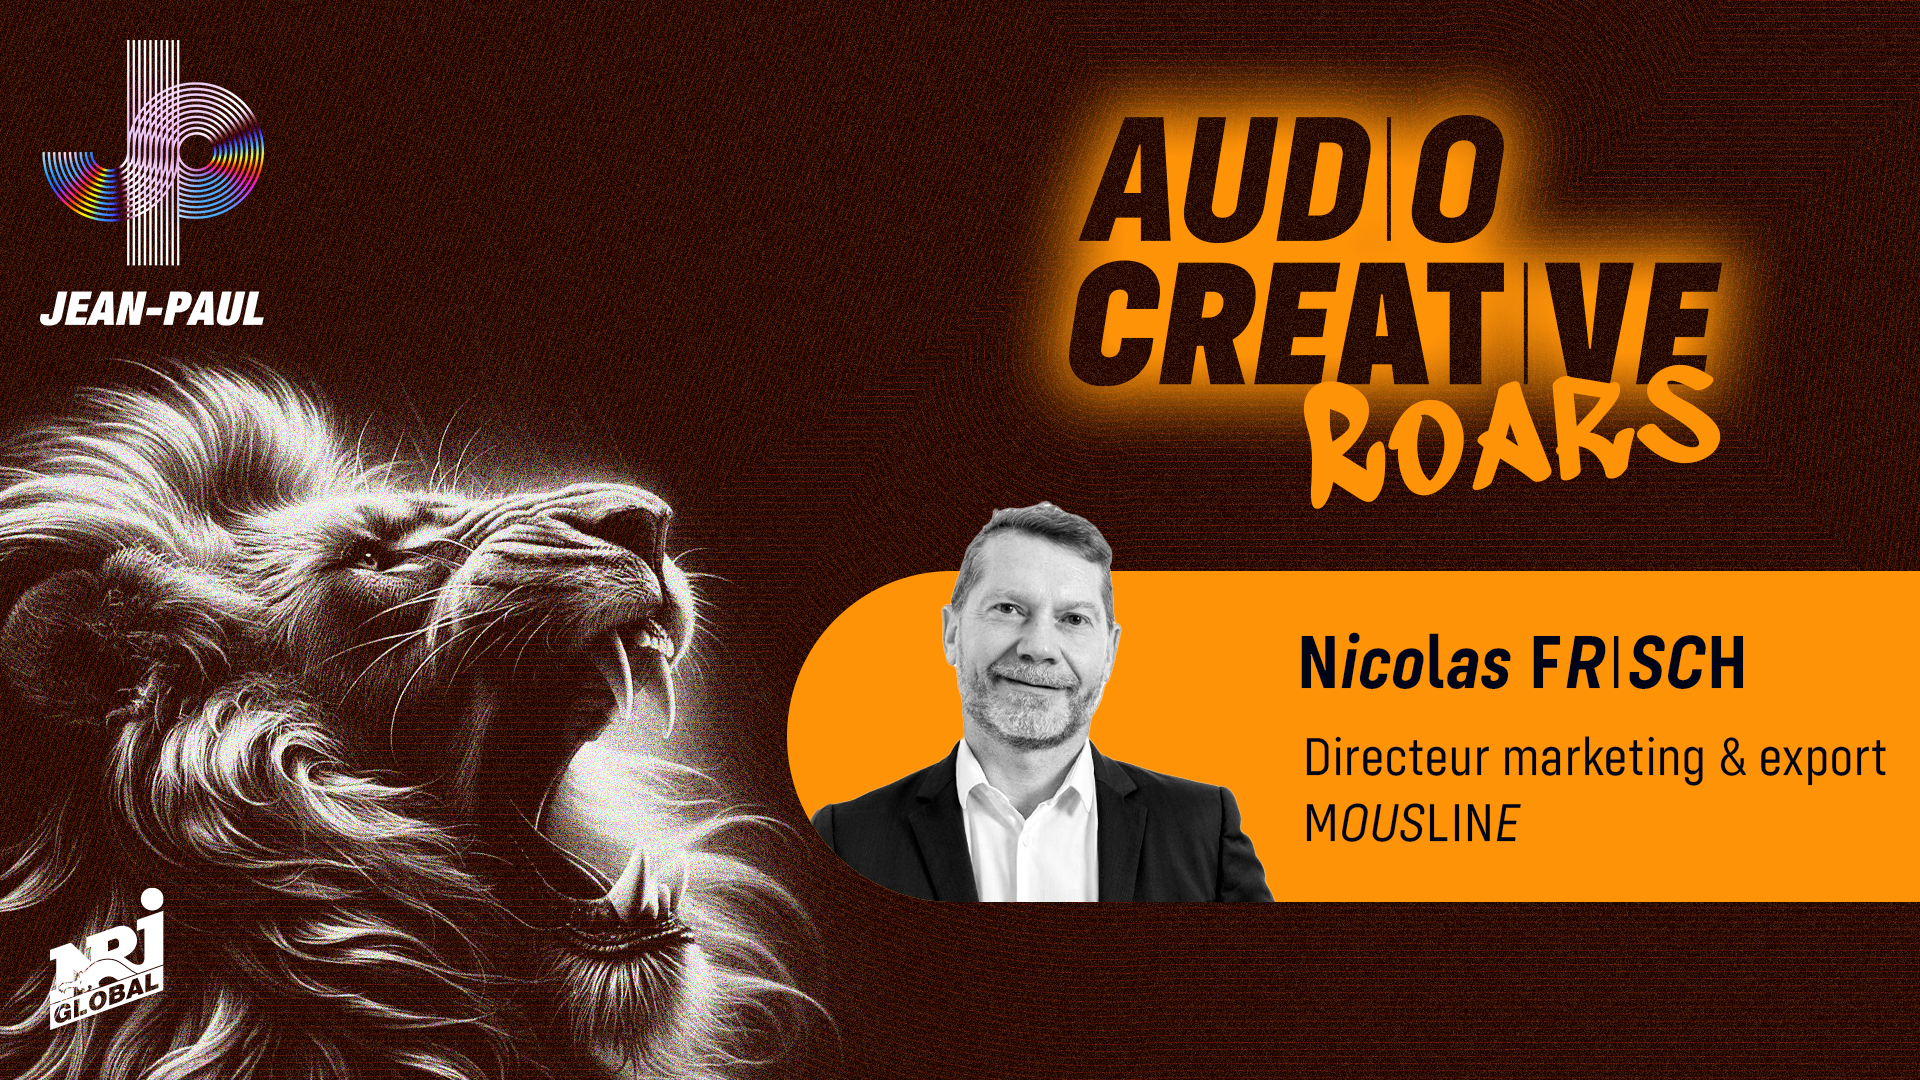 AUDIO CREATIVE ROARD – Tribune de Nicolas Frisch, directeur marketing et export de Mousline